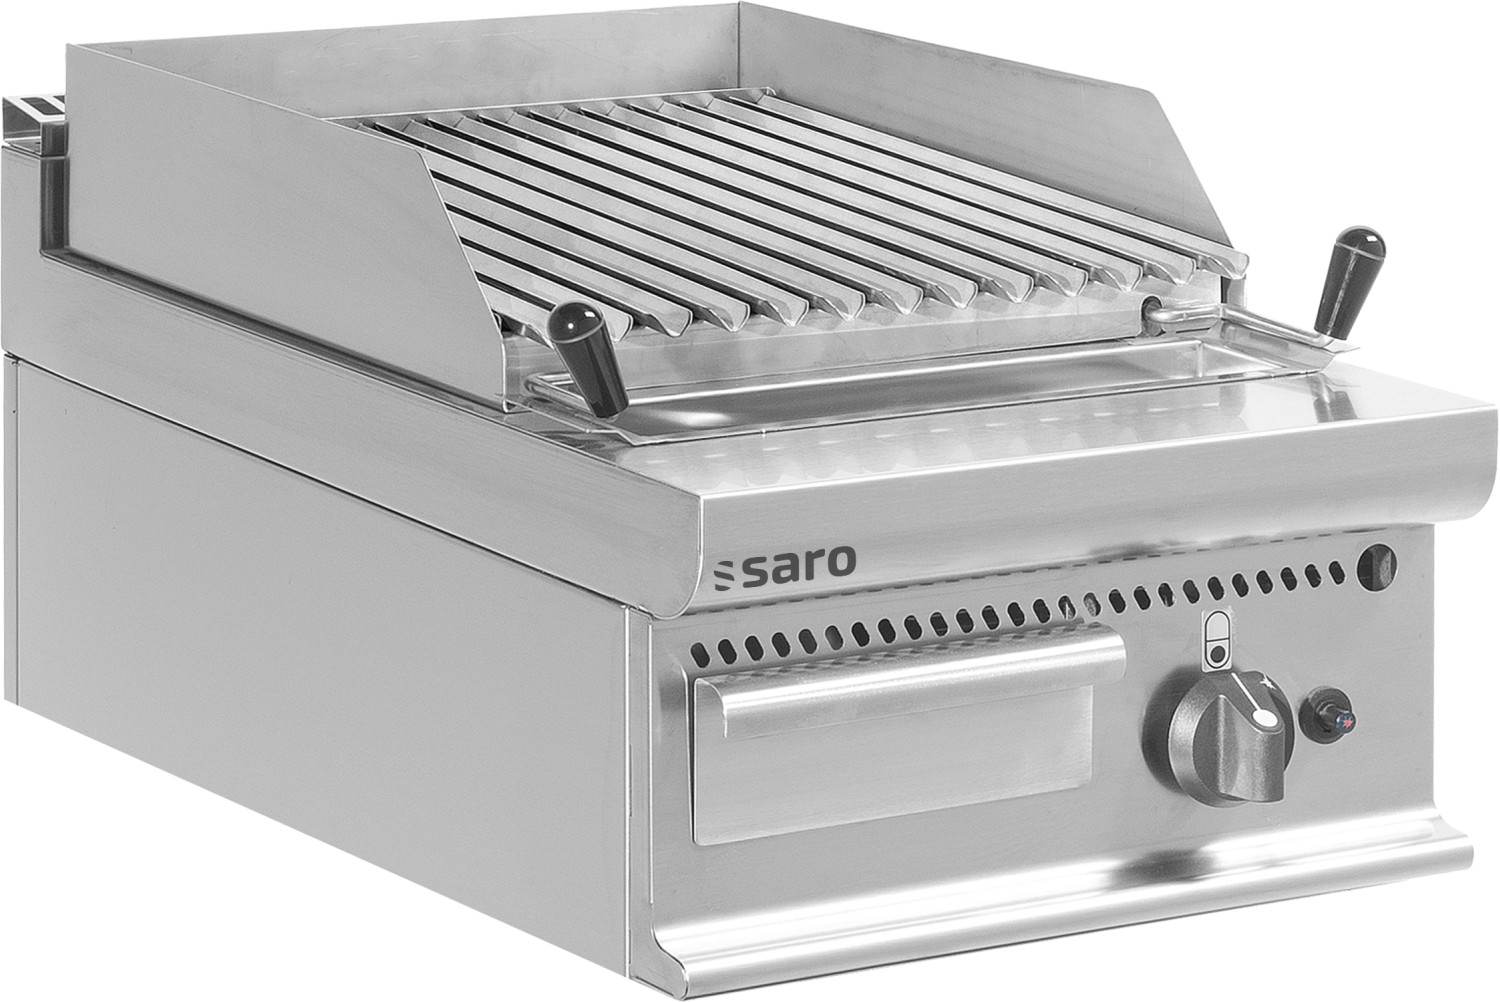  Saro Gas-Lavasteingrill Tisch E7/BS1BB 